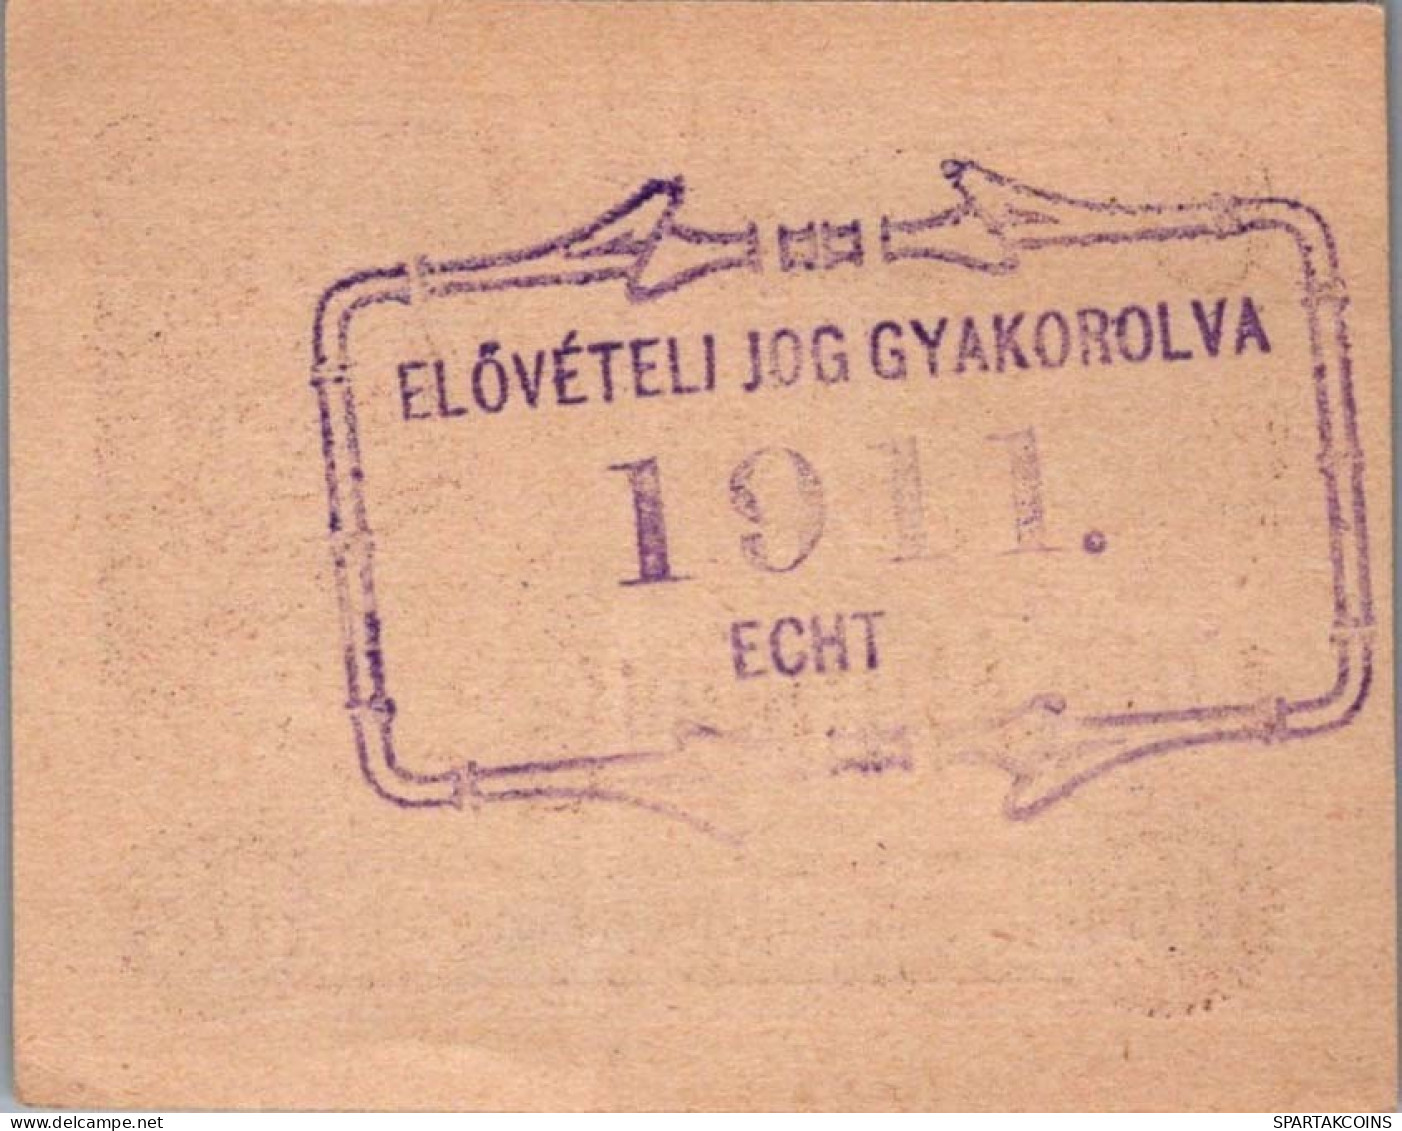 20 HELLER 1920 Stadt PURKERSDORF Niedrigeren Österreich Notgeld Papiergeld Banknote #PG977 - Lokale Ausgaben